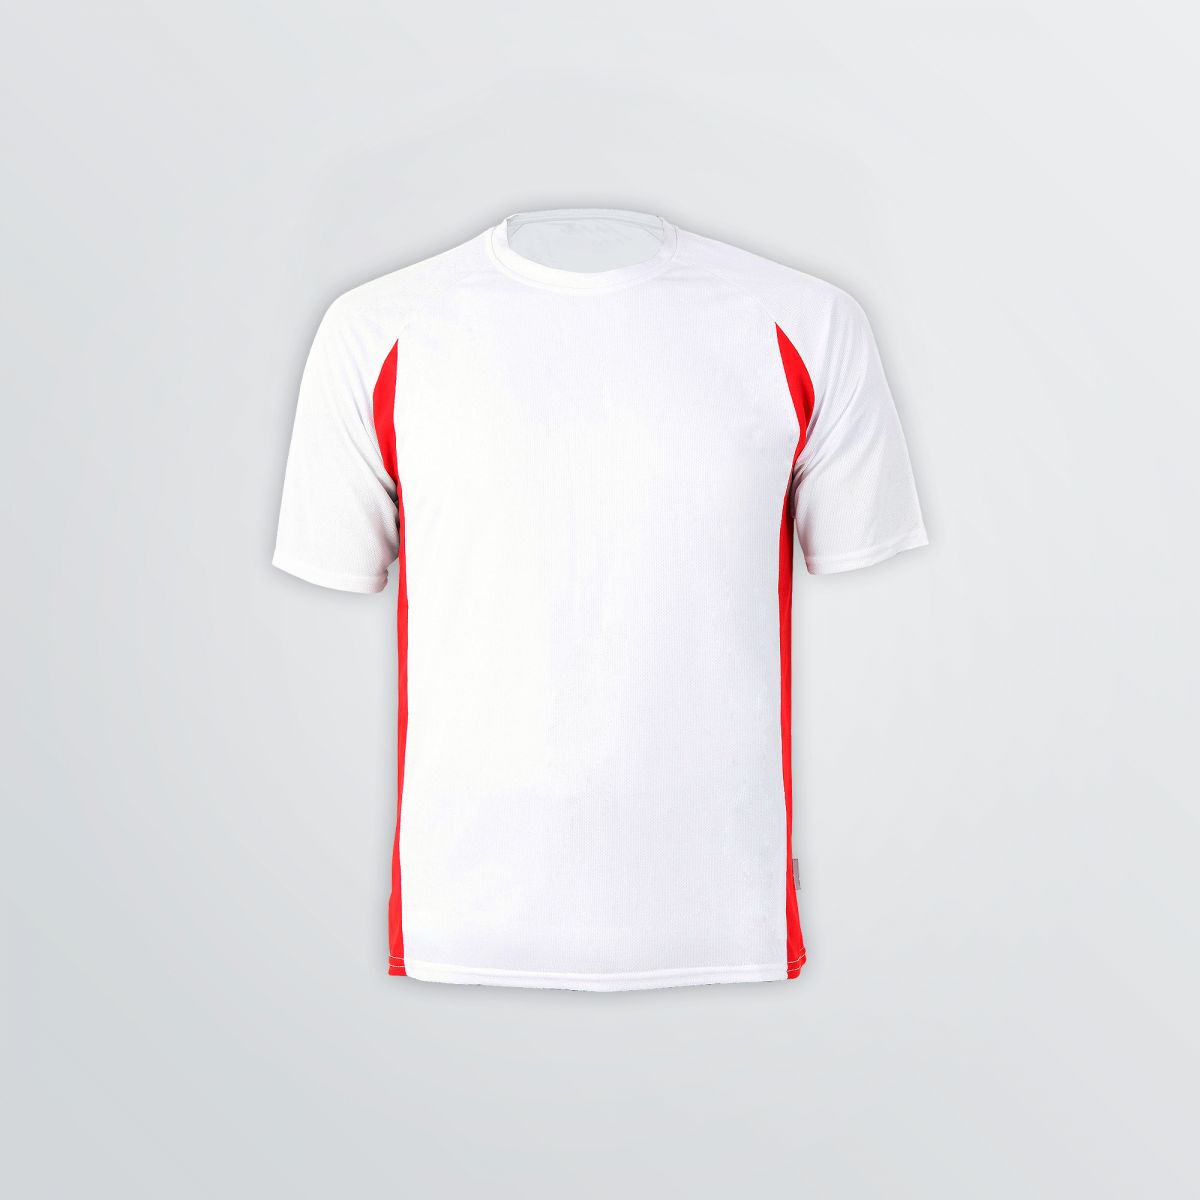 Individualisierbares Racer Tech Shirt aus Funktionsmaterial als Produktbeispiel in weiß mit roten Seiteneinsätzen - Frontansicht